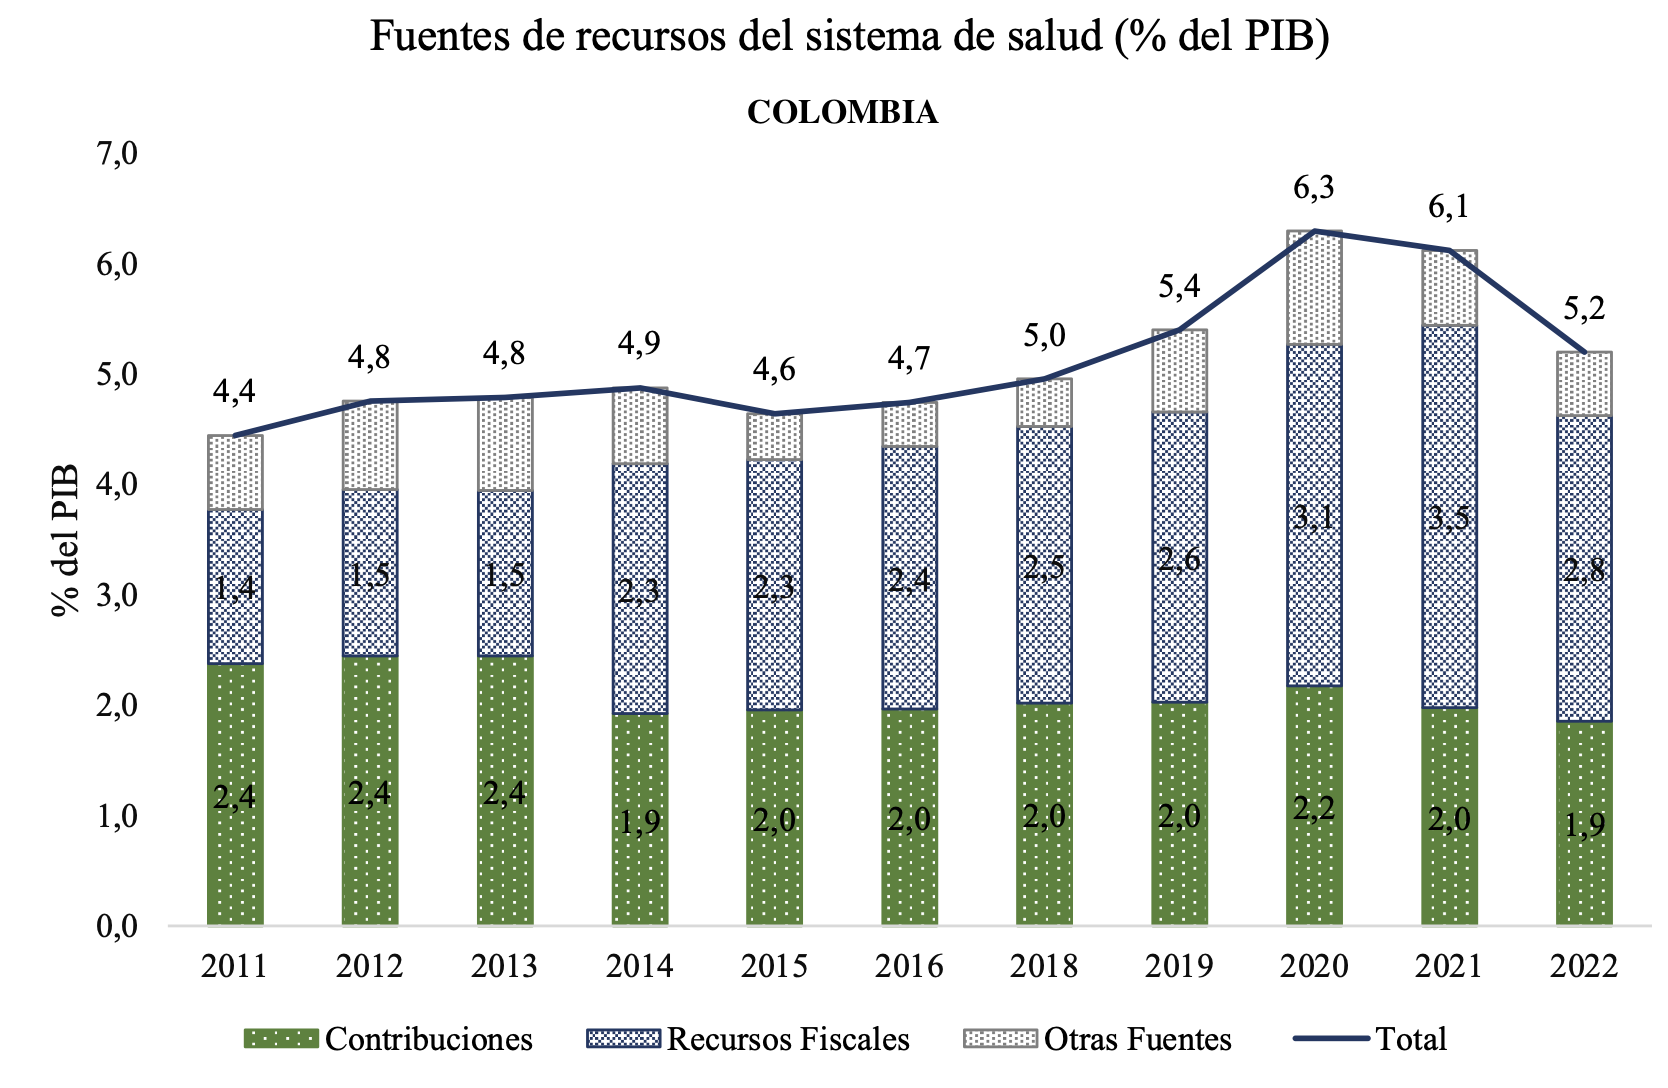 Fuentes y Usos del Financiamiento del Sistema de Salud en Colombia